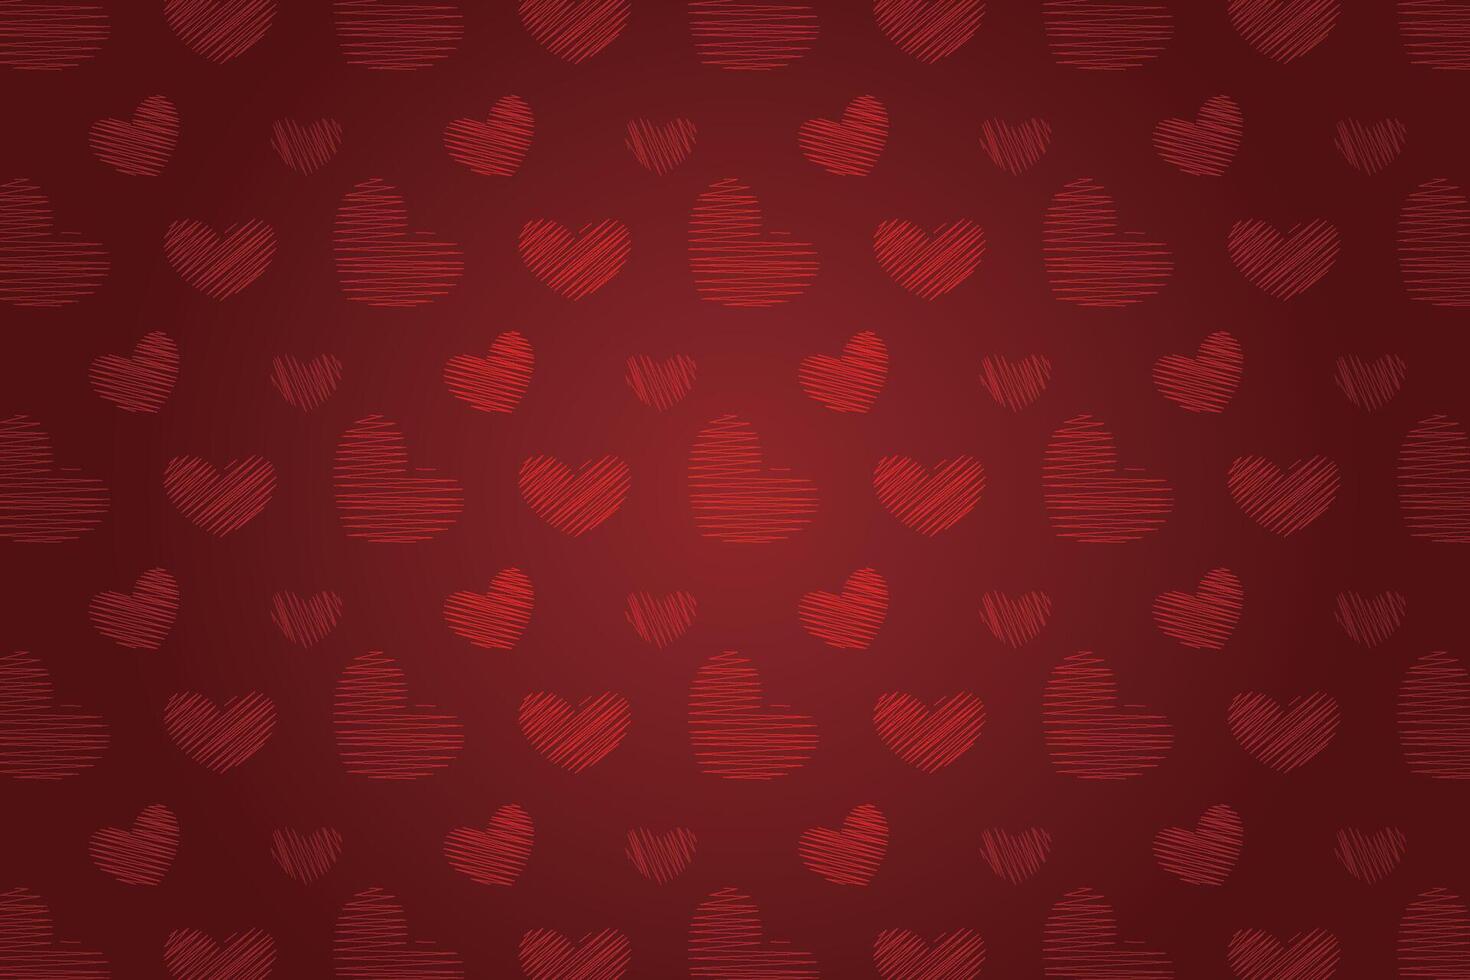 vector liefde hart patroon, vector hand- getrokken Valentijnsdag dag patroon